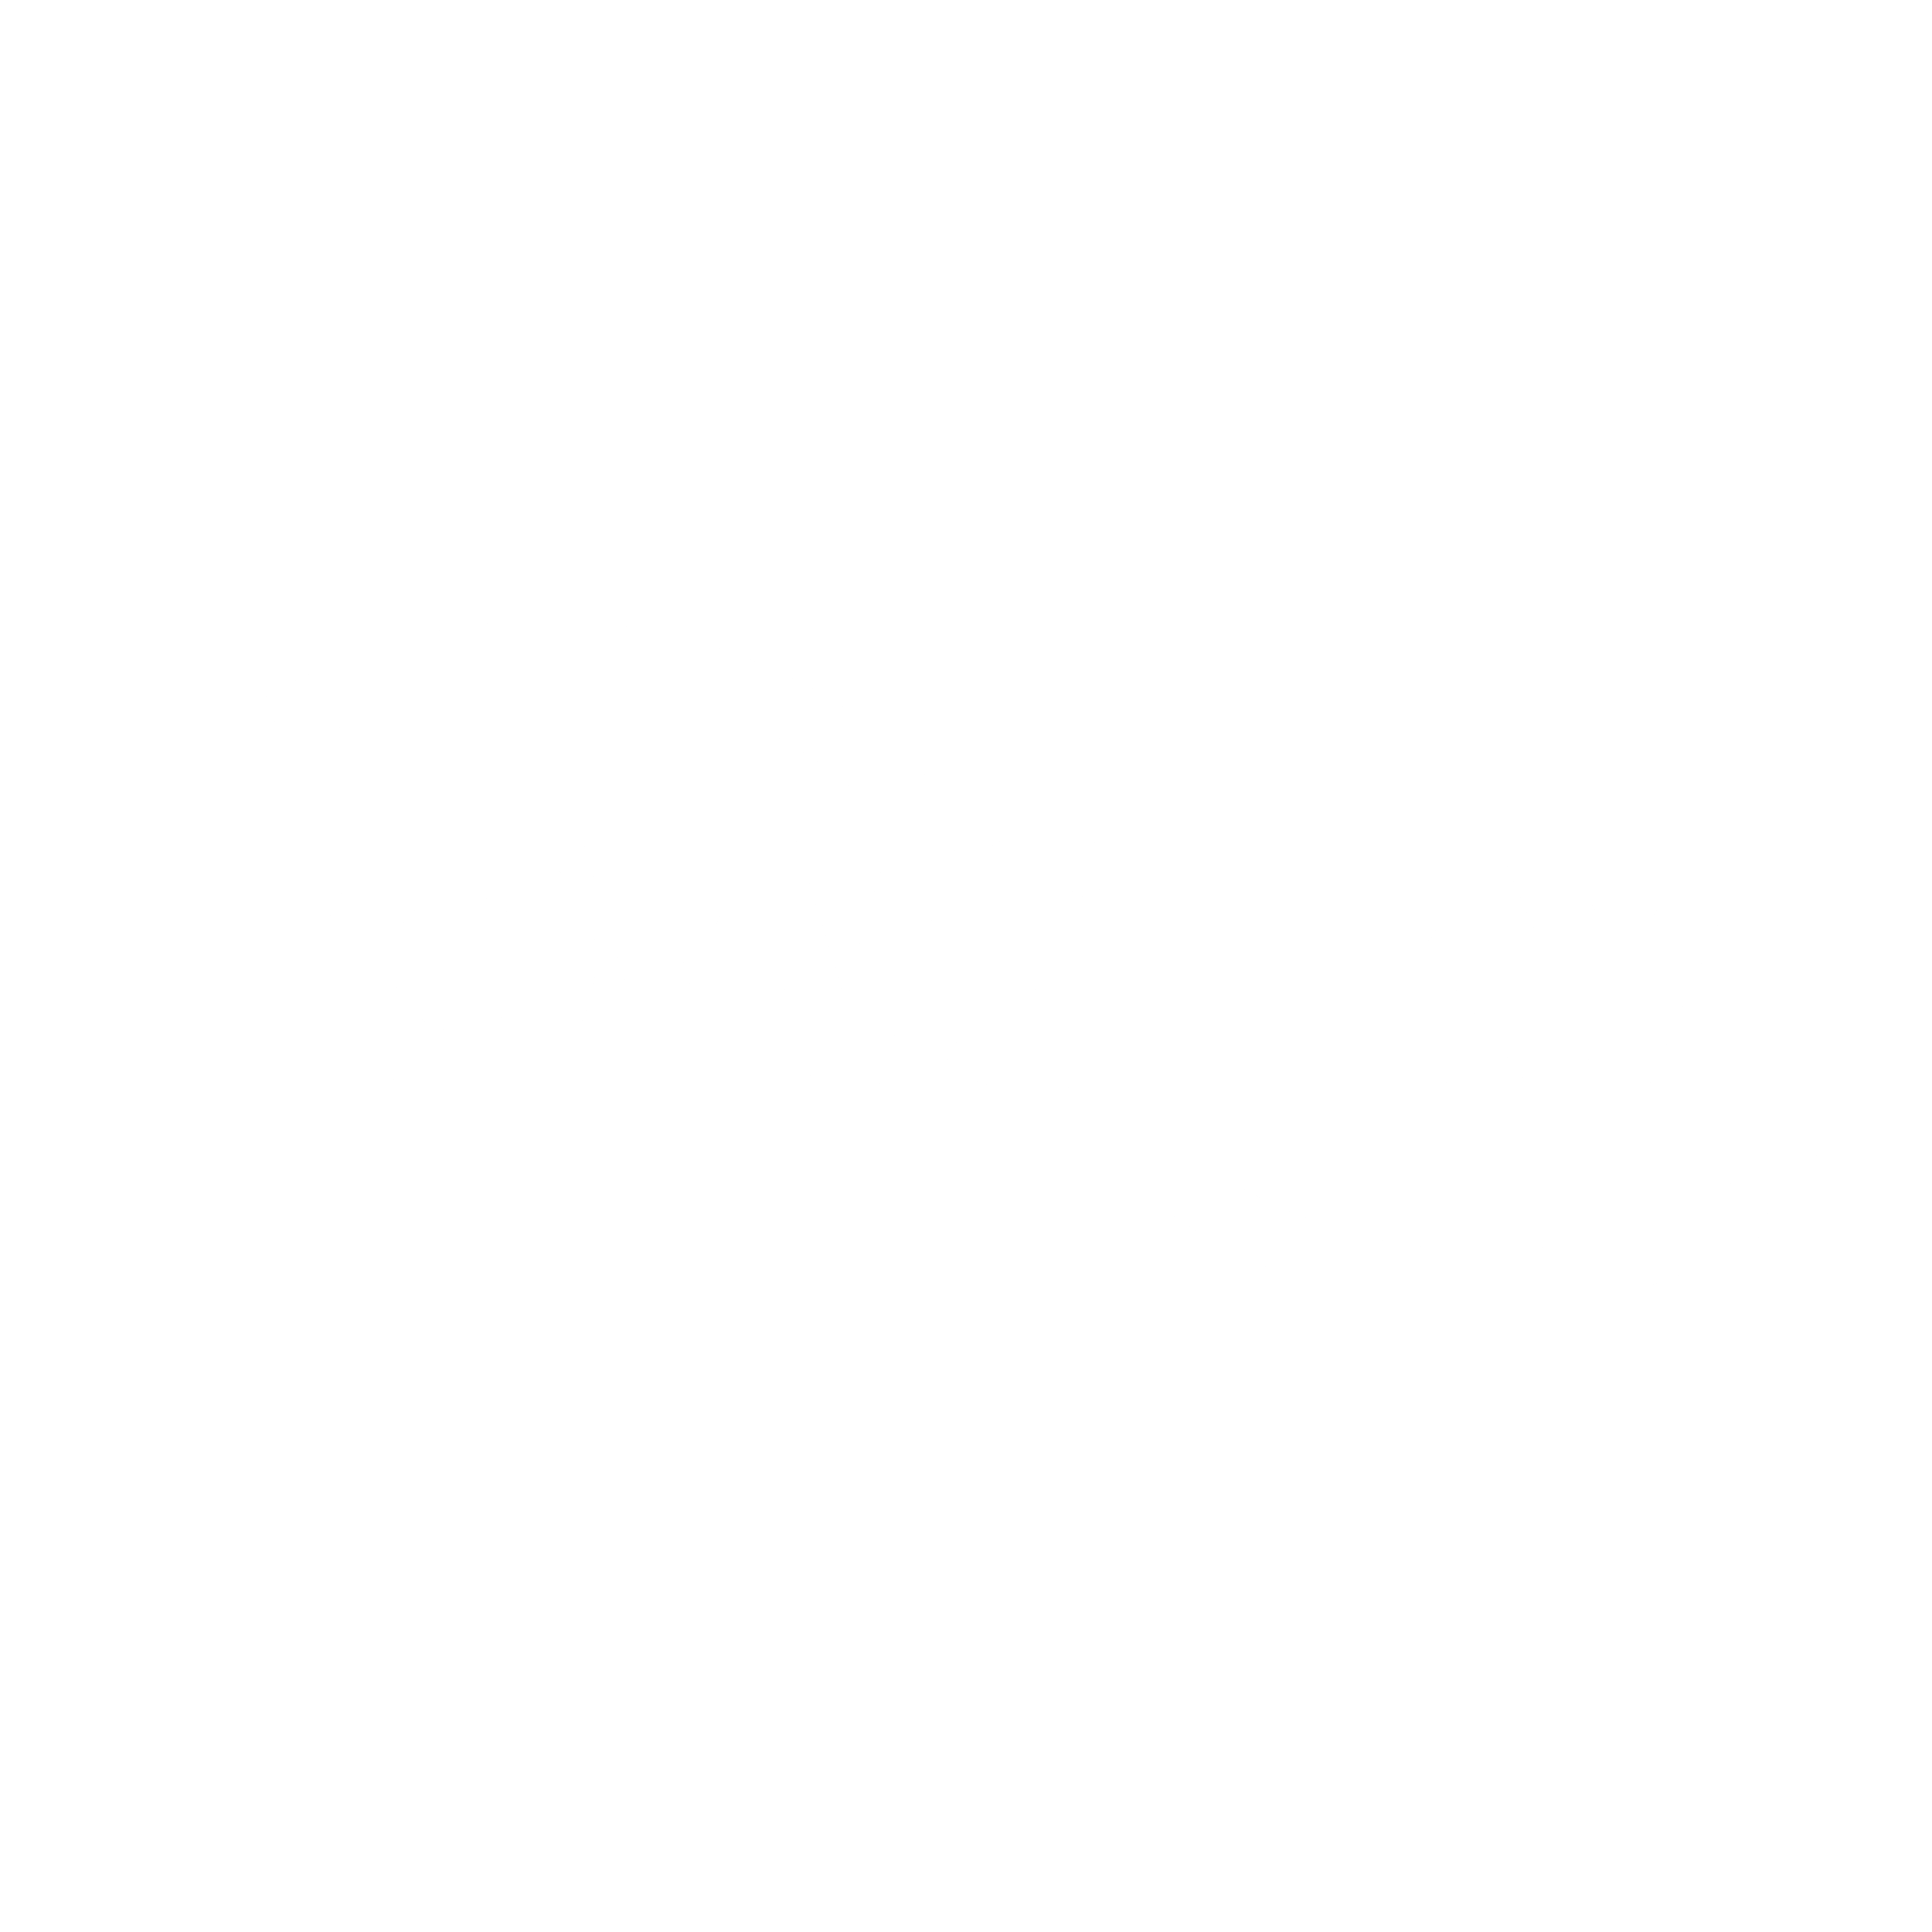 Flowserve Logo - Flowserve Logo PNG Transparent & SVG Vector